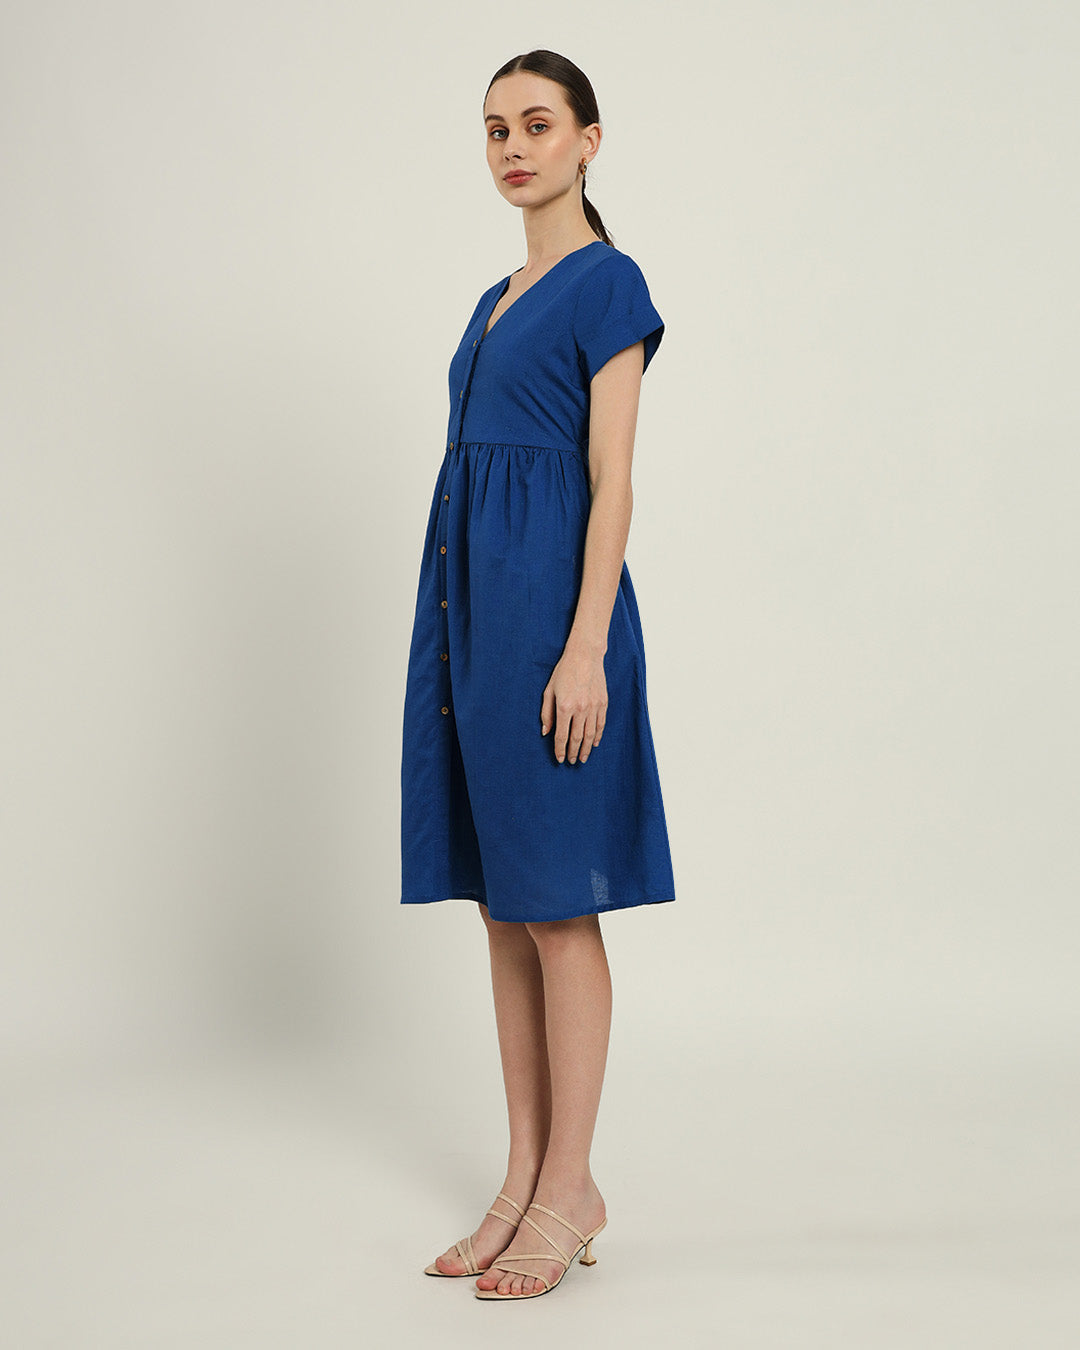 The Valence Cobalt Dress